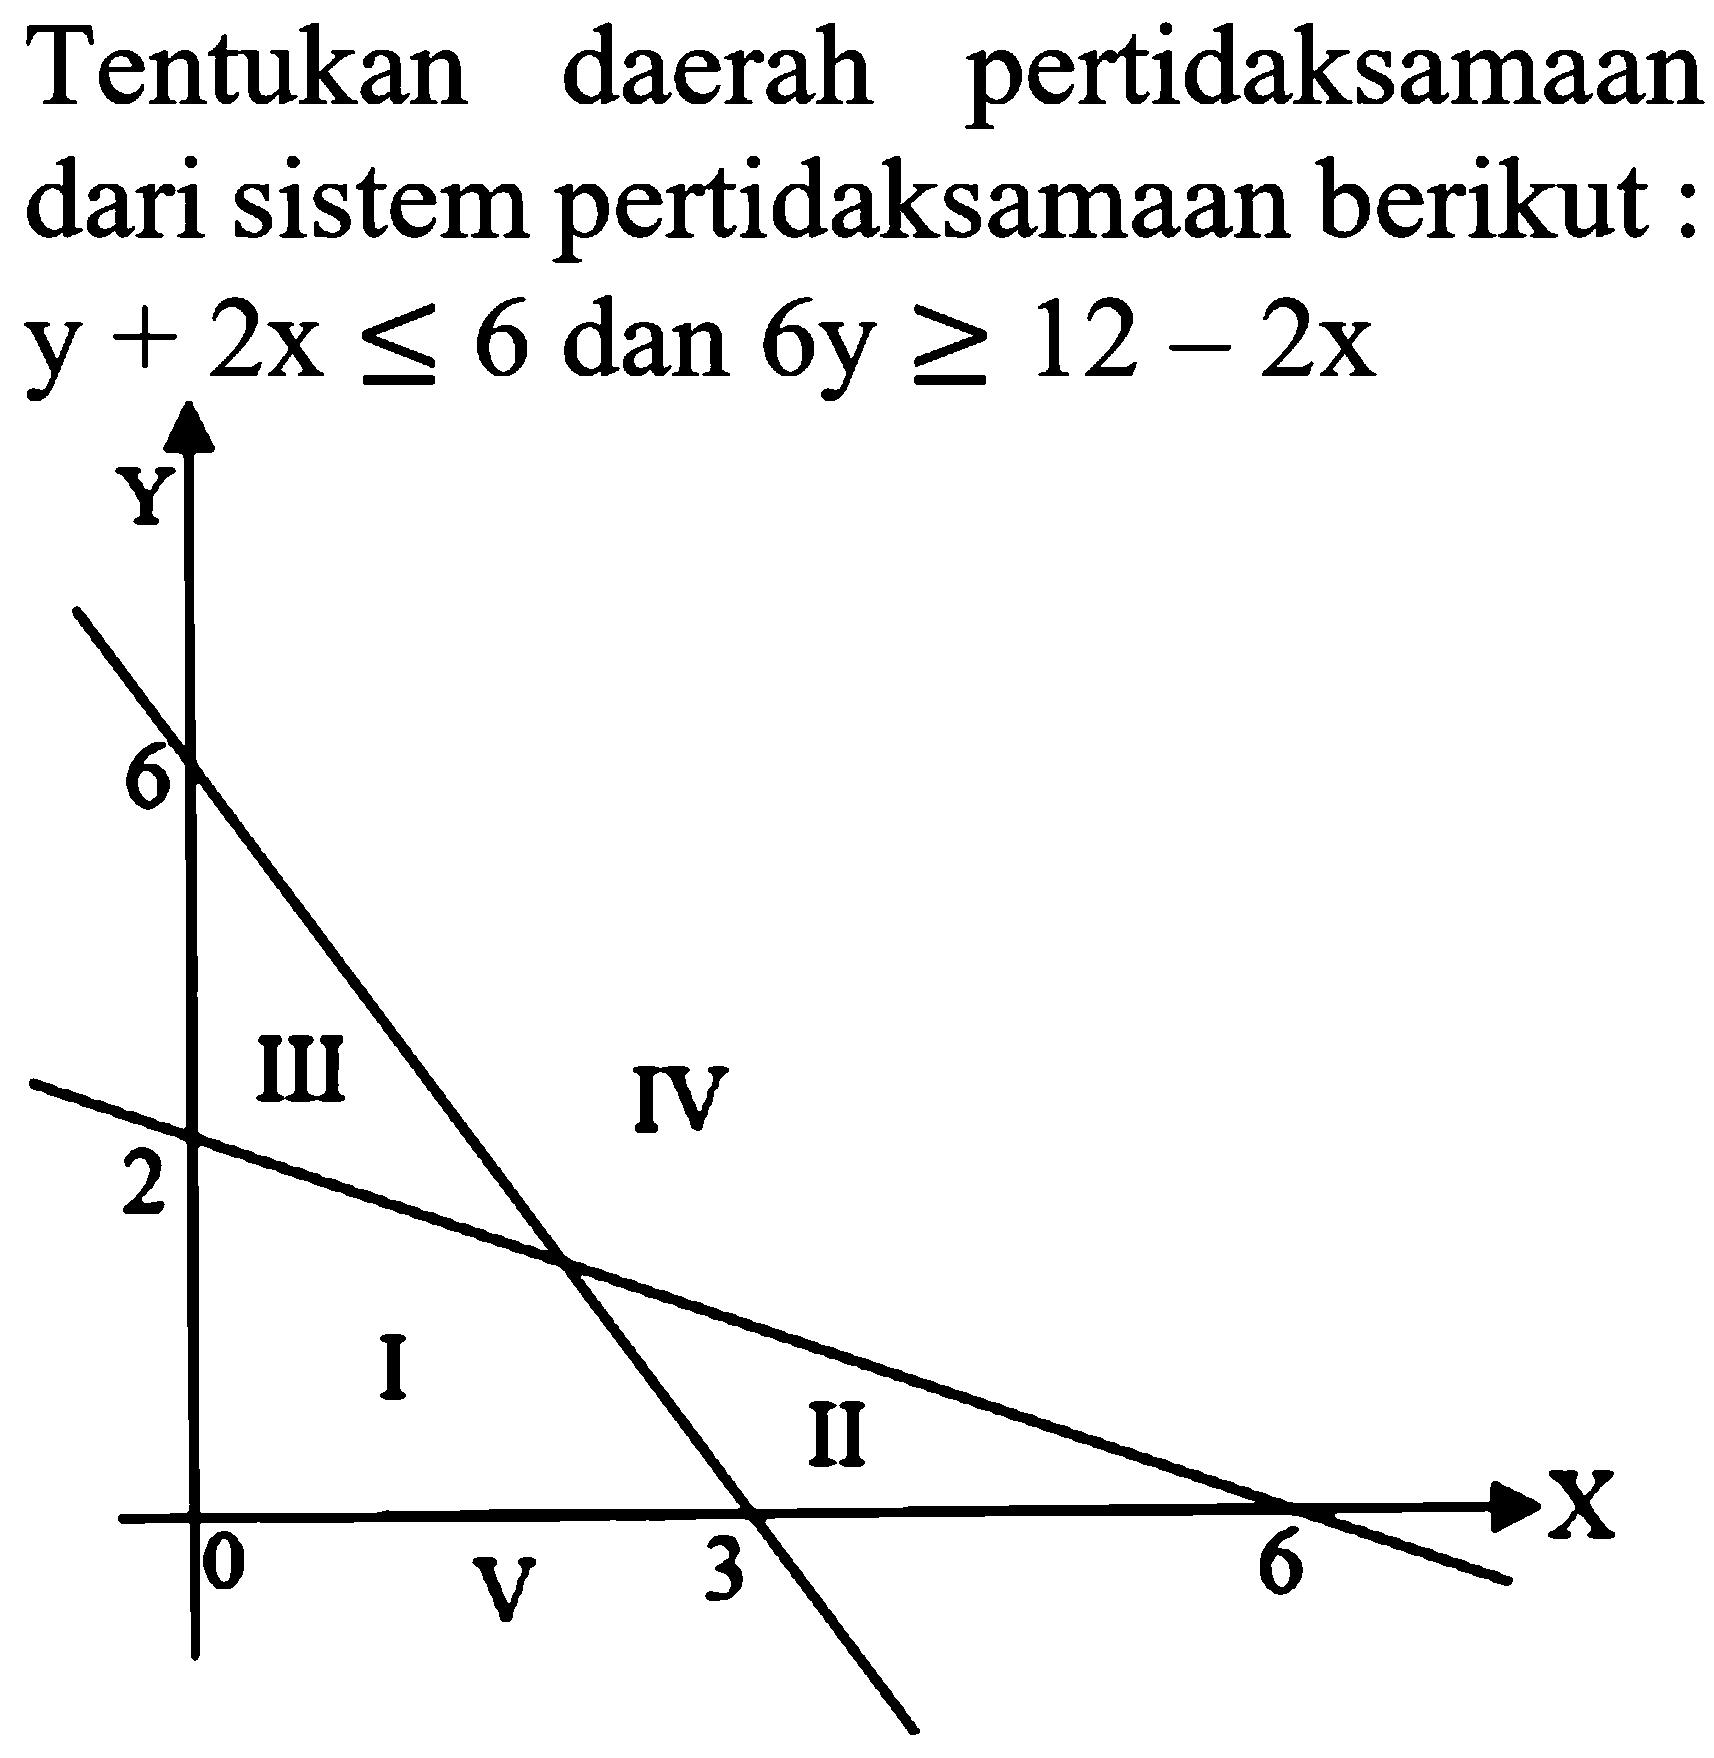 Tentukan pertidaksamaan daerah dari sistem pertidaksamaan berikut y+2x<=6 dan 6y>=12-2x Y 6 III IV 2 I II 0 V 3 6 X